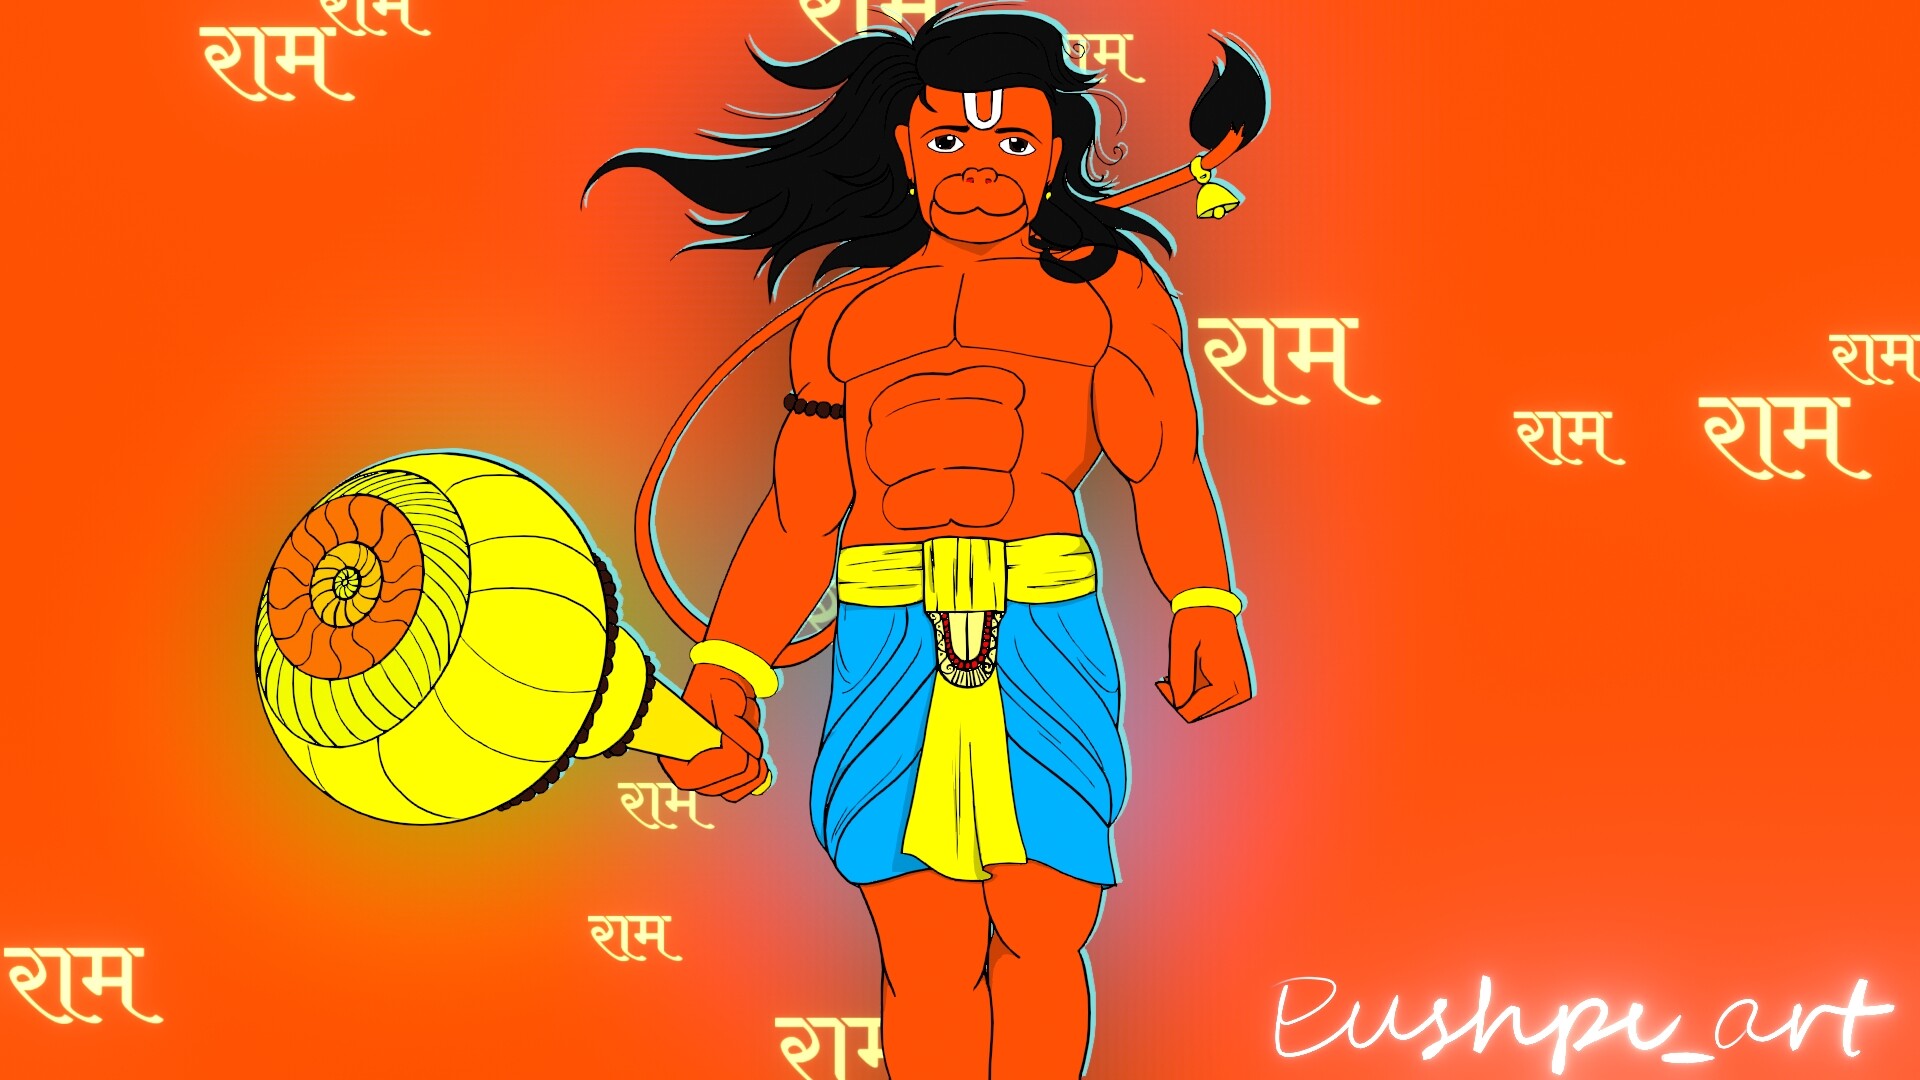 ArtStation - lord hanuman